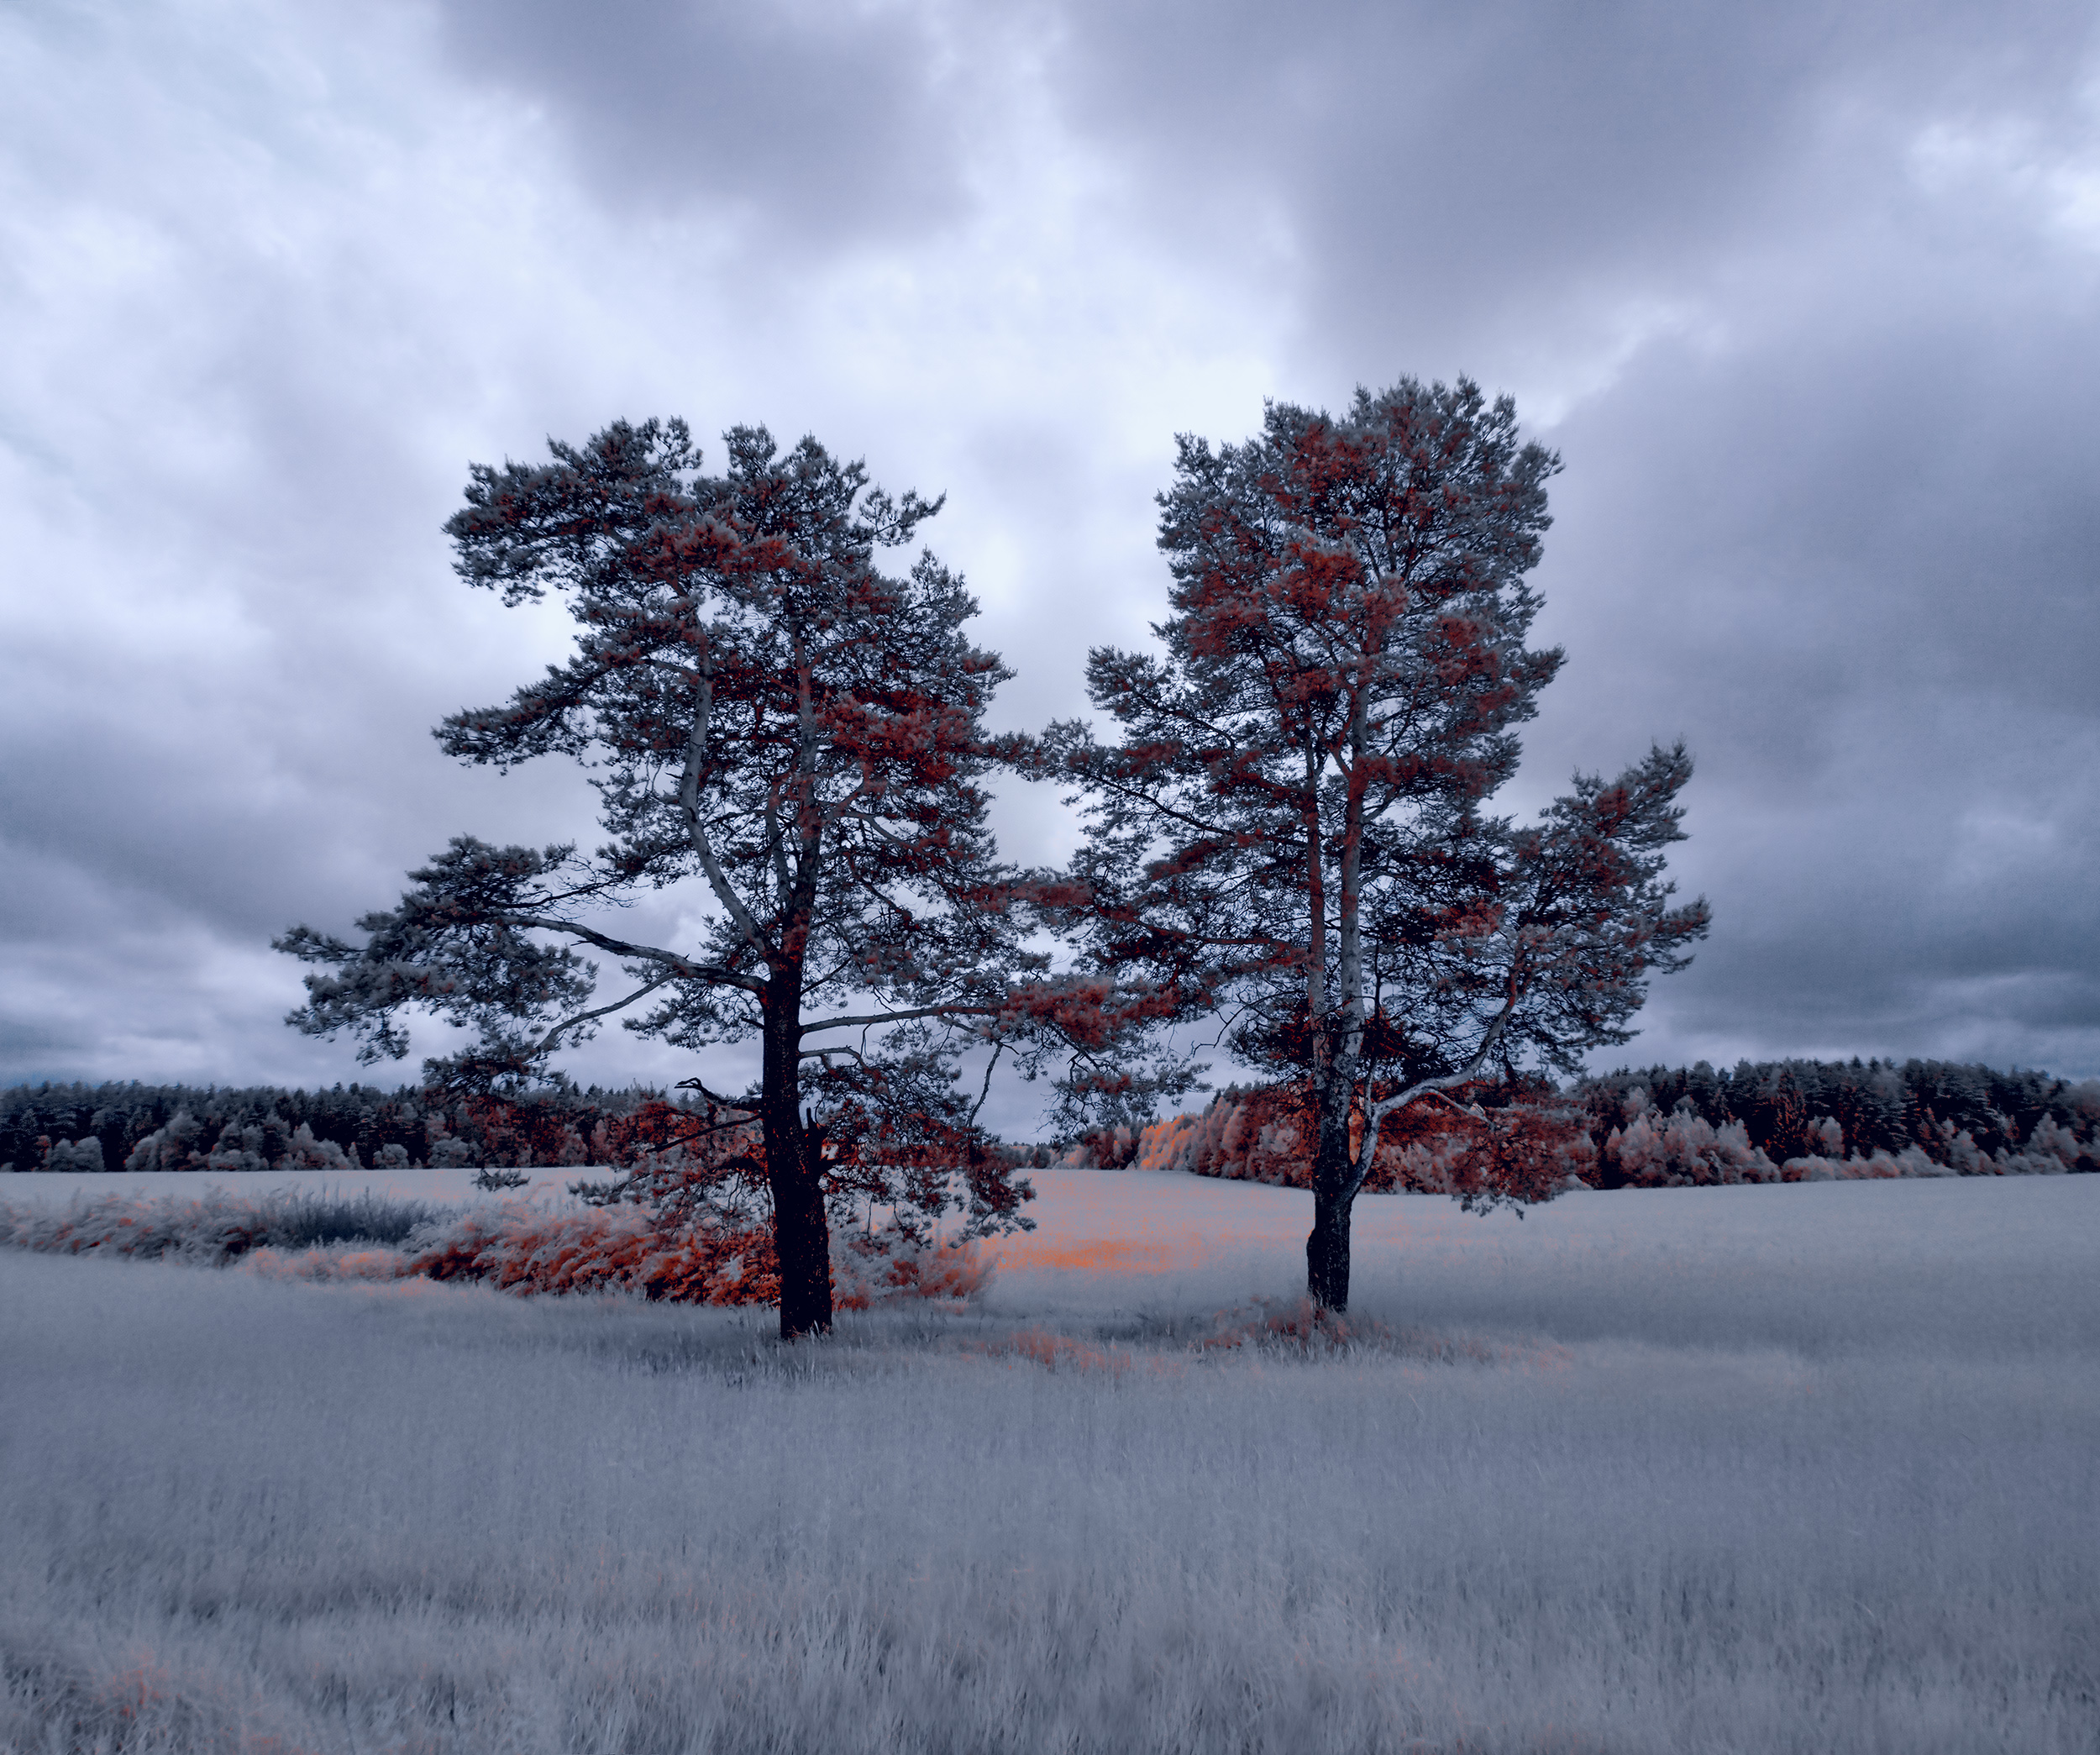 Two pine trees stood in a field 811a40a4 c881 4e41 a4d1 ad6e7e8a8a0d